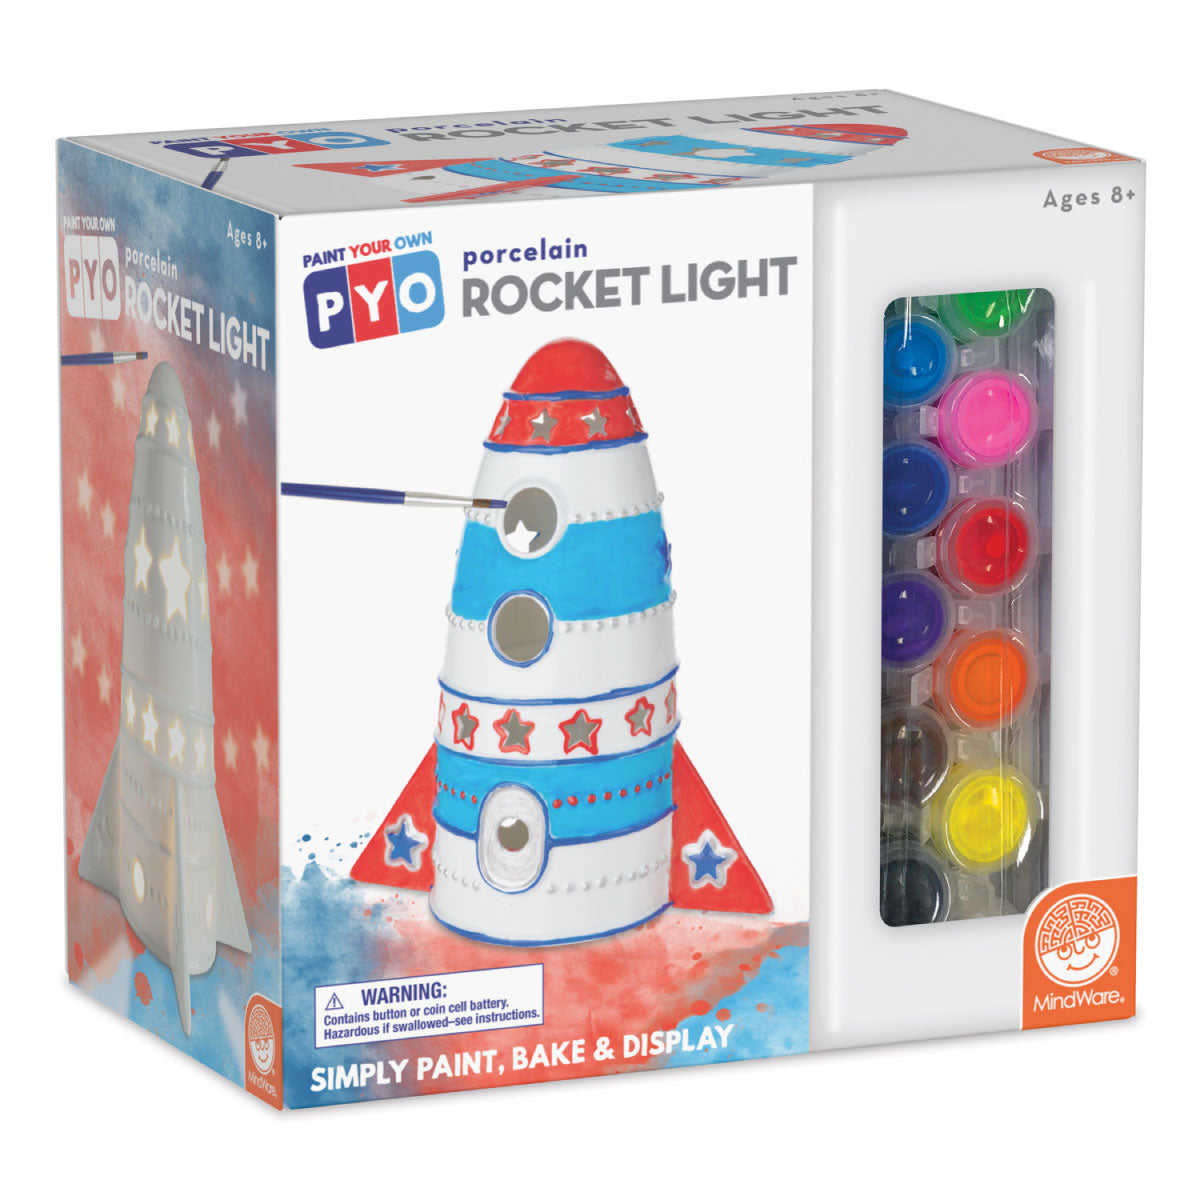 Mindware PYO Paint Your Own Porcelain Rocket Light